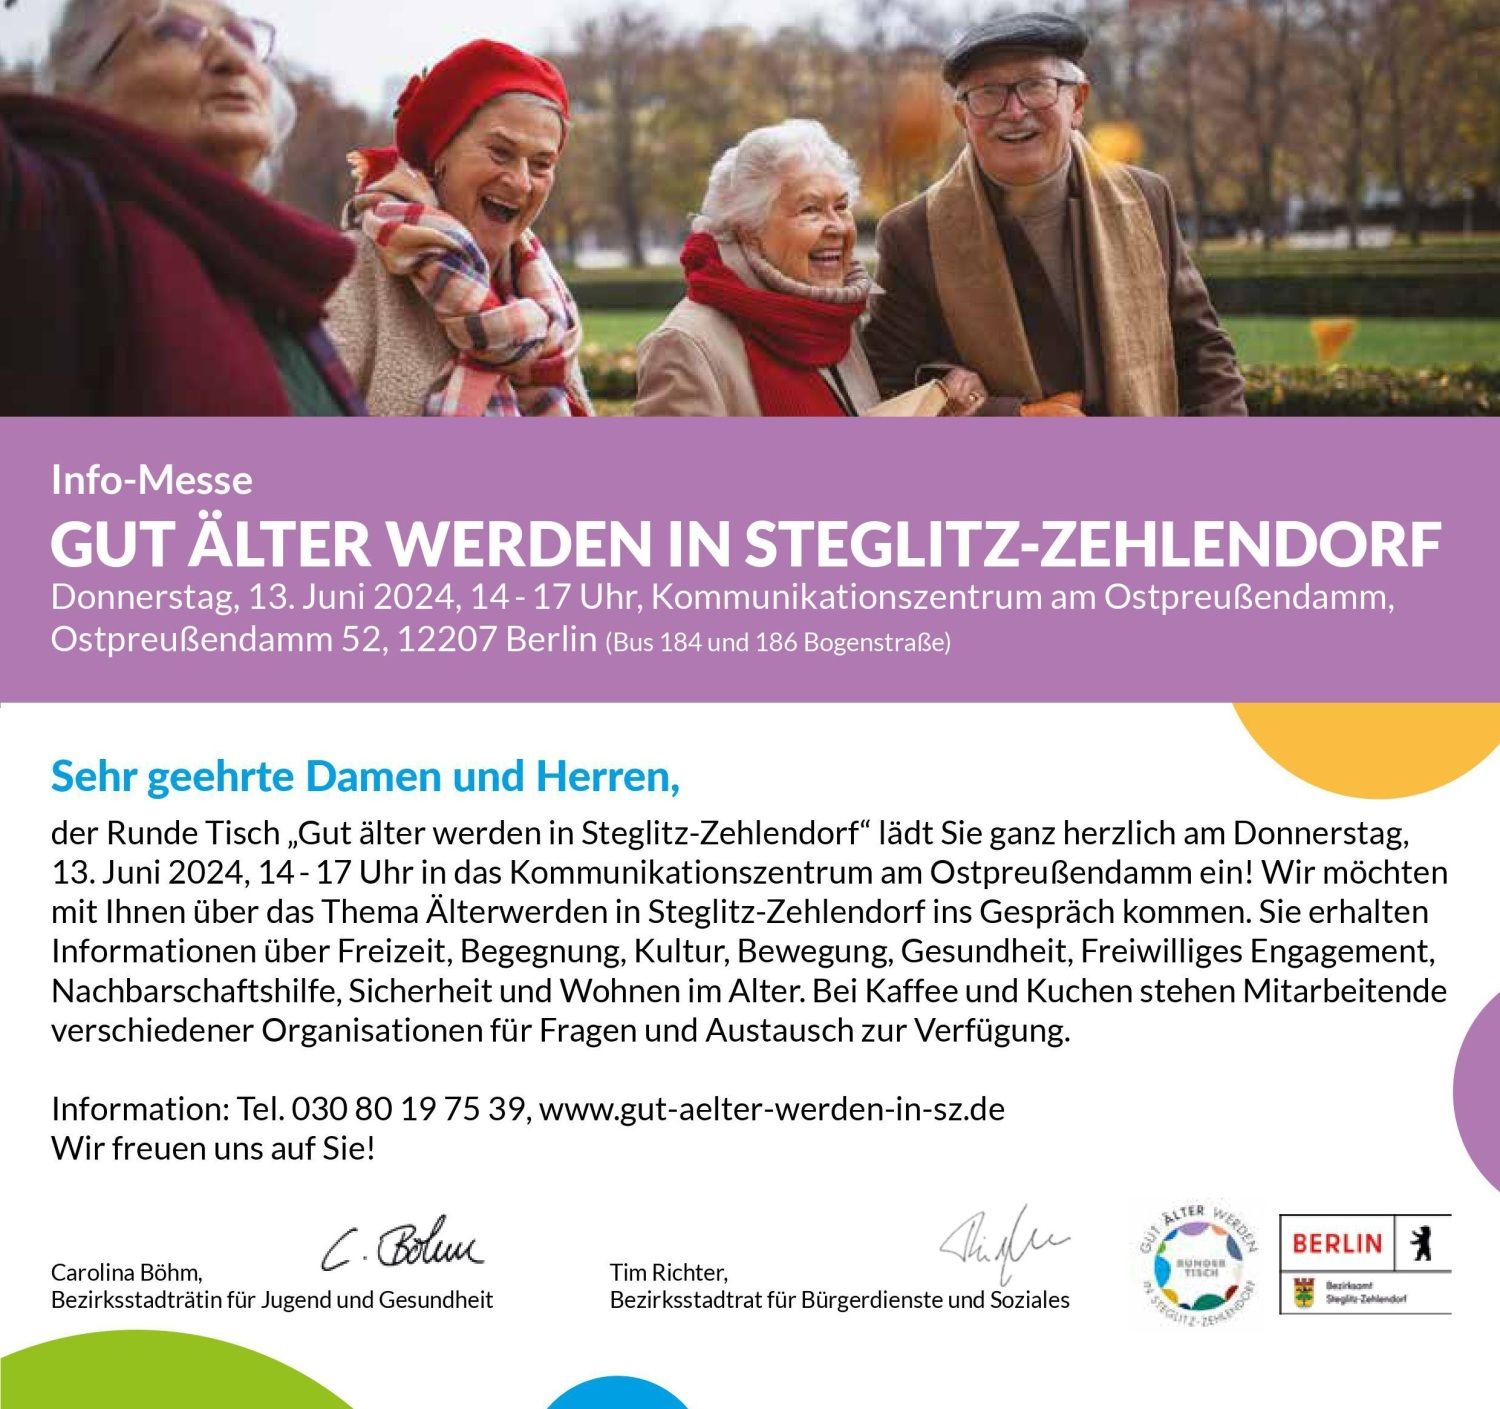 Gut älter werden in Steglitz-Zehlendorf